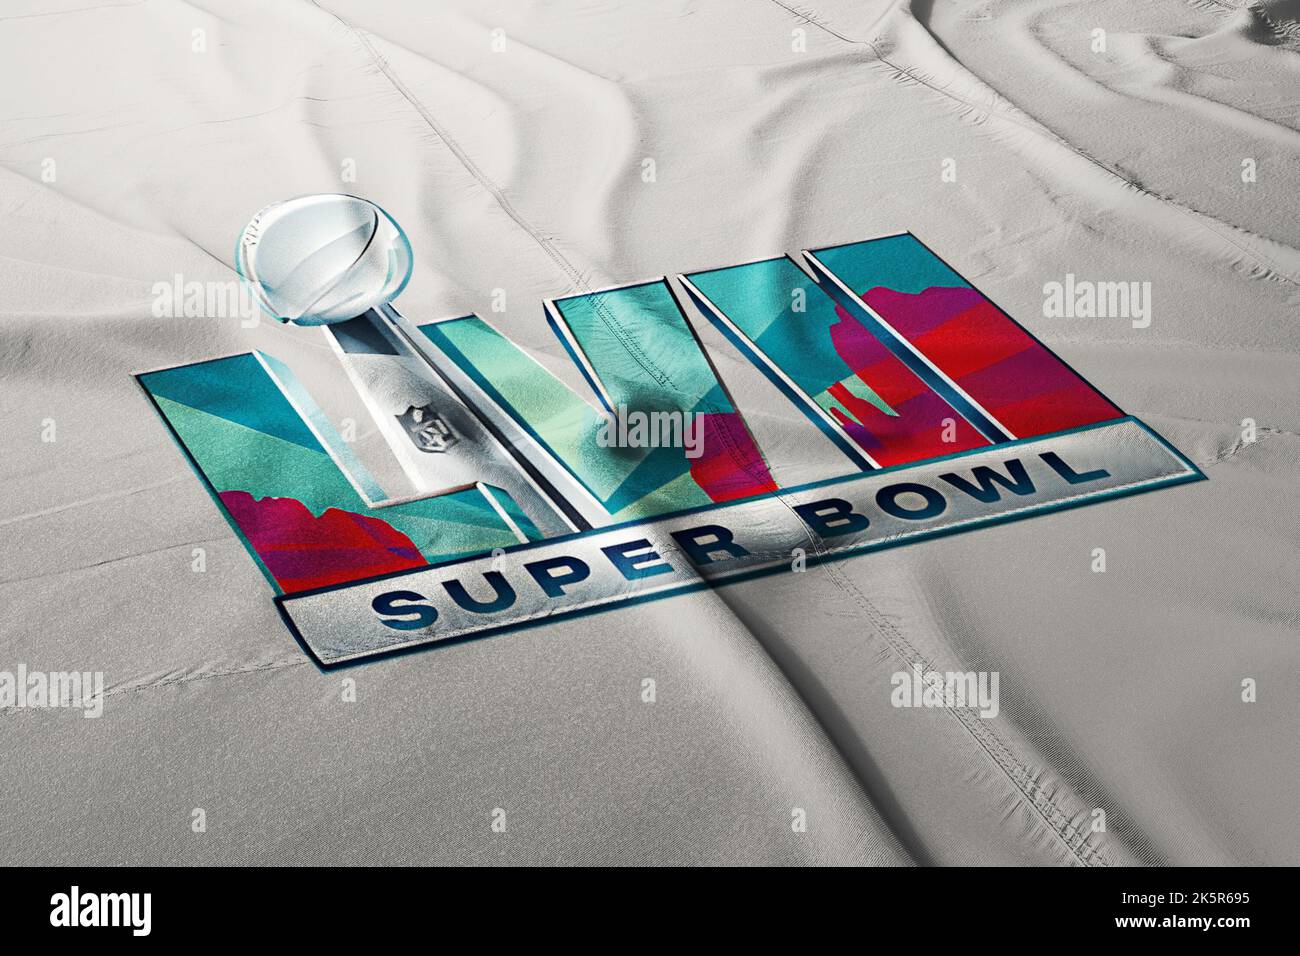 Ilustración de la próxima liga nacional de fútbol del evento lvii 2023 de Super Bowl, Foto de stock